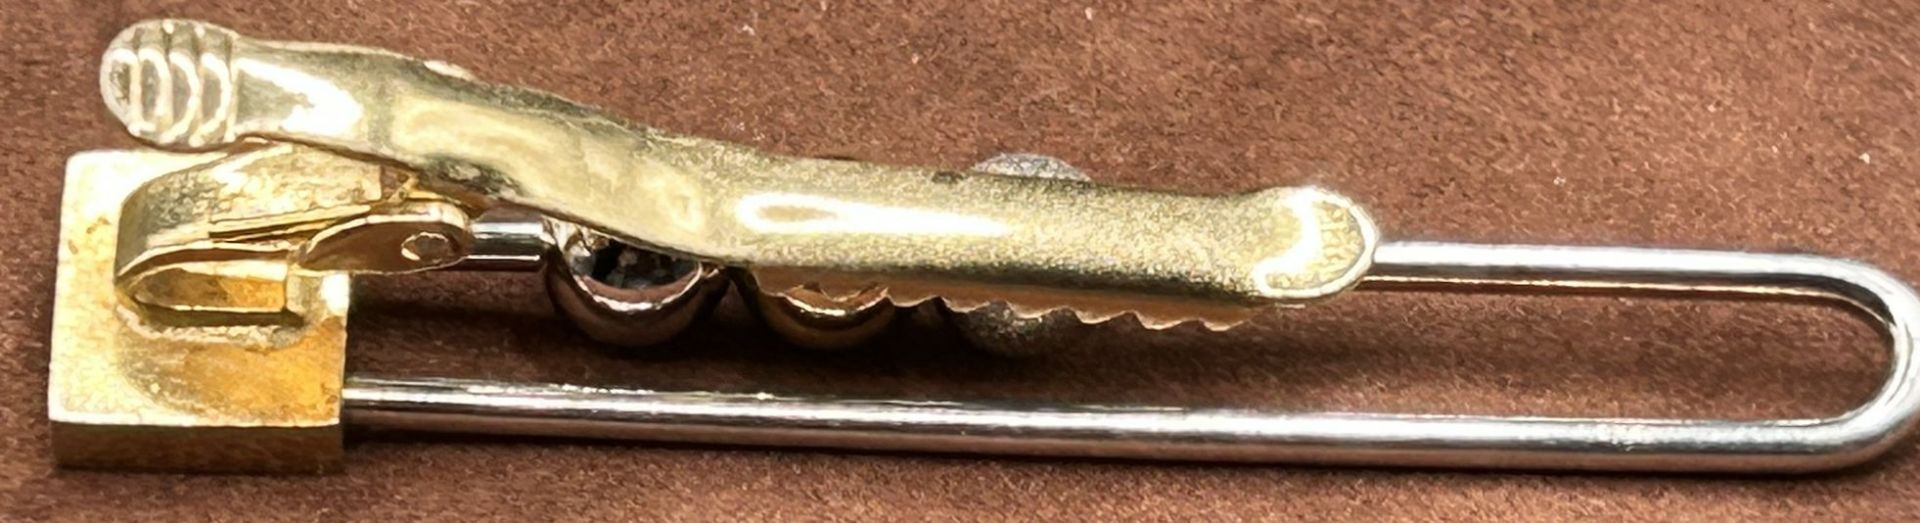 Krawattenklammer, Silber-925- mit 3 beweglichen Kugel, Klamme Metall, L-6,2 cm, 10,2 gr - Bild 4 aus 4